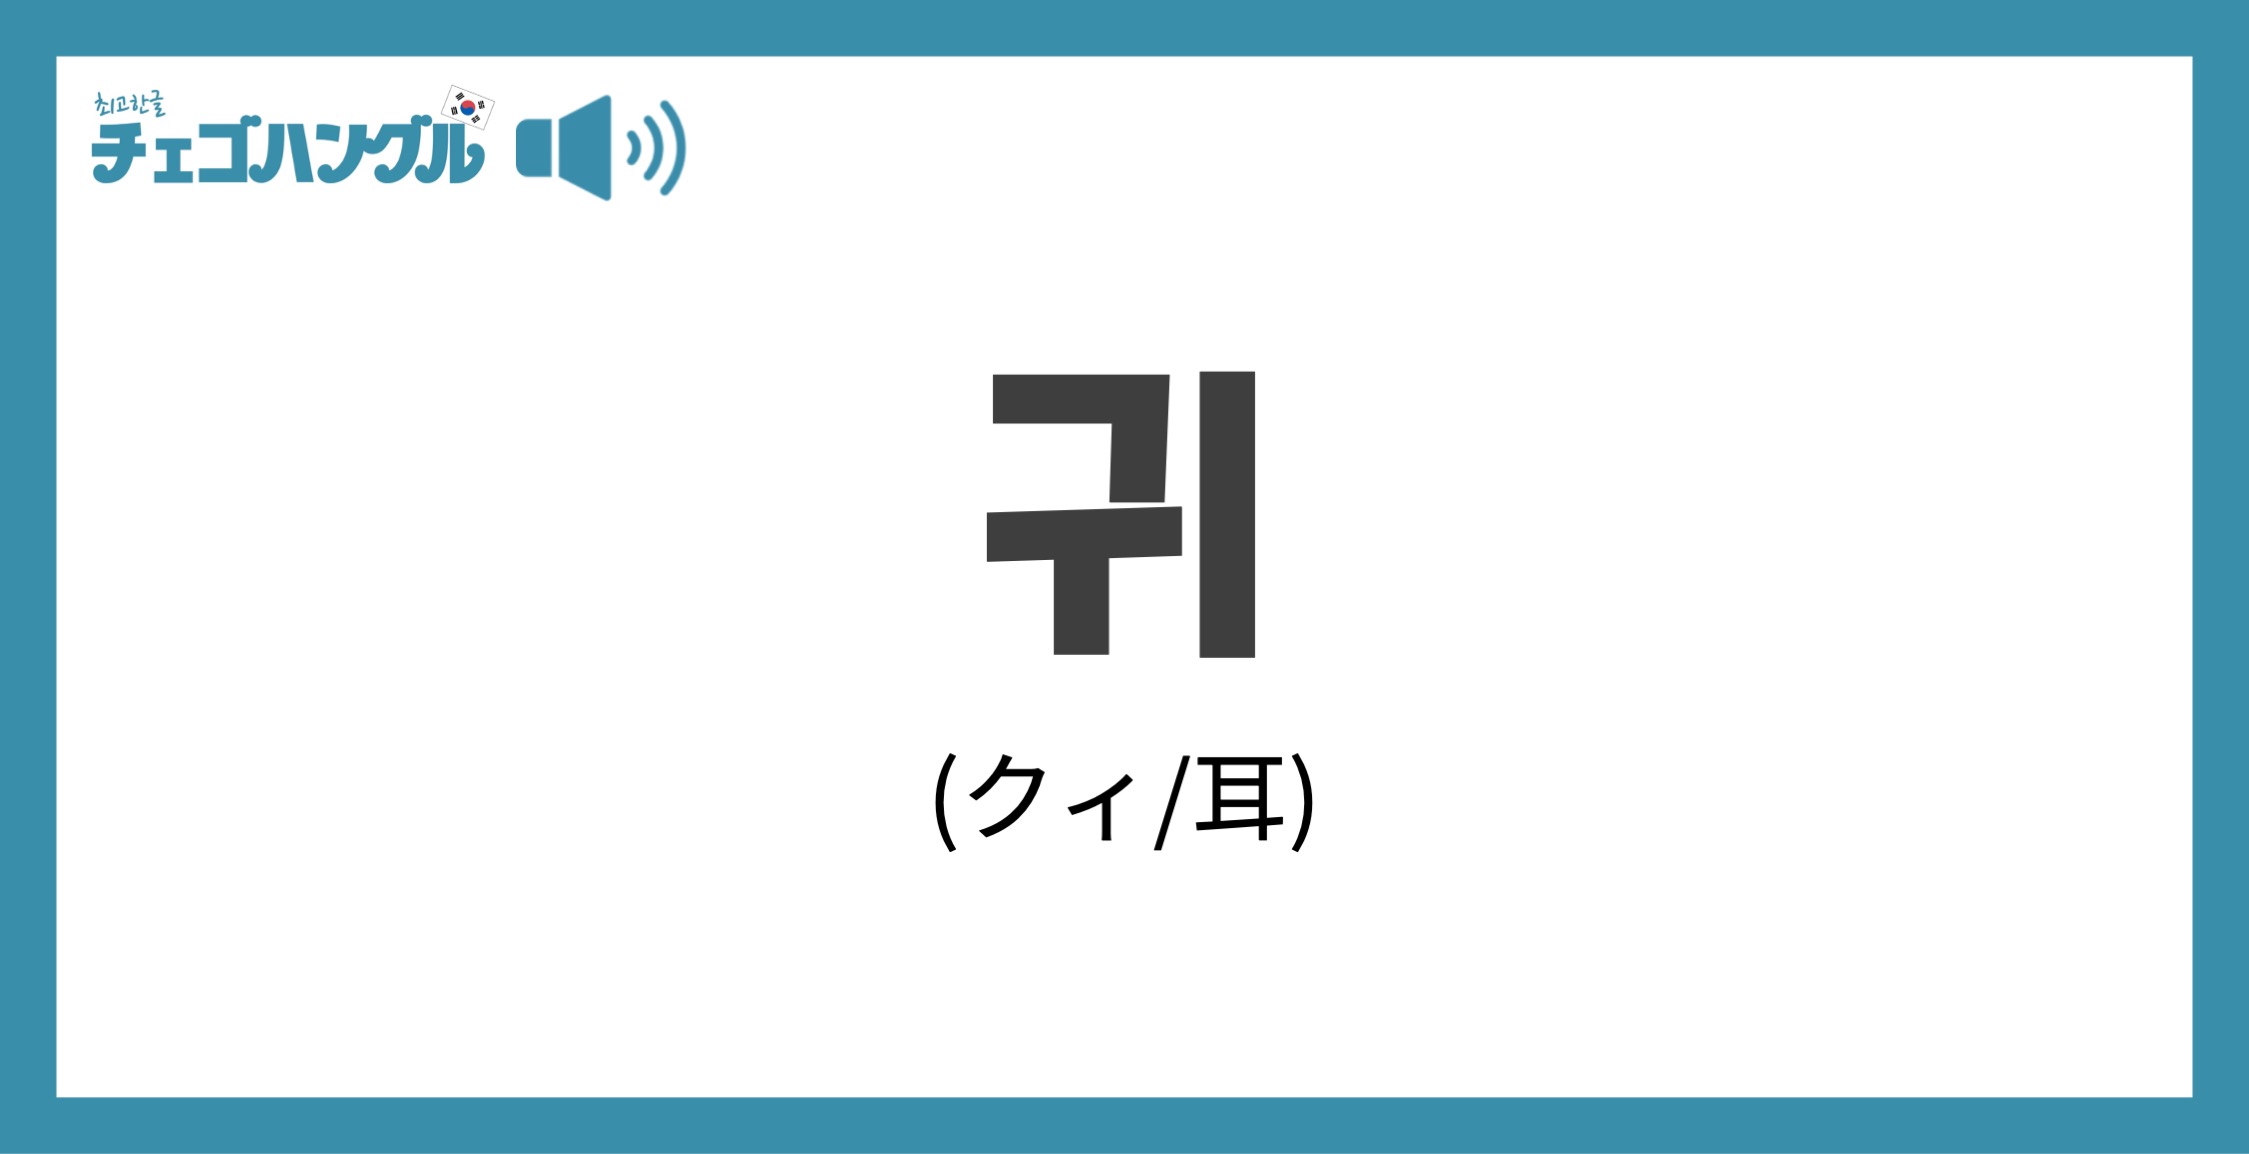 韓国語で「耳」を表す「귀(クィ)」